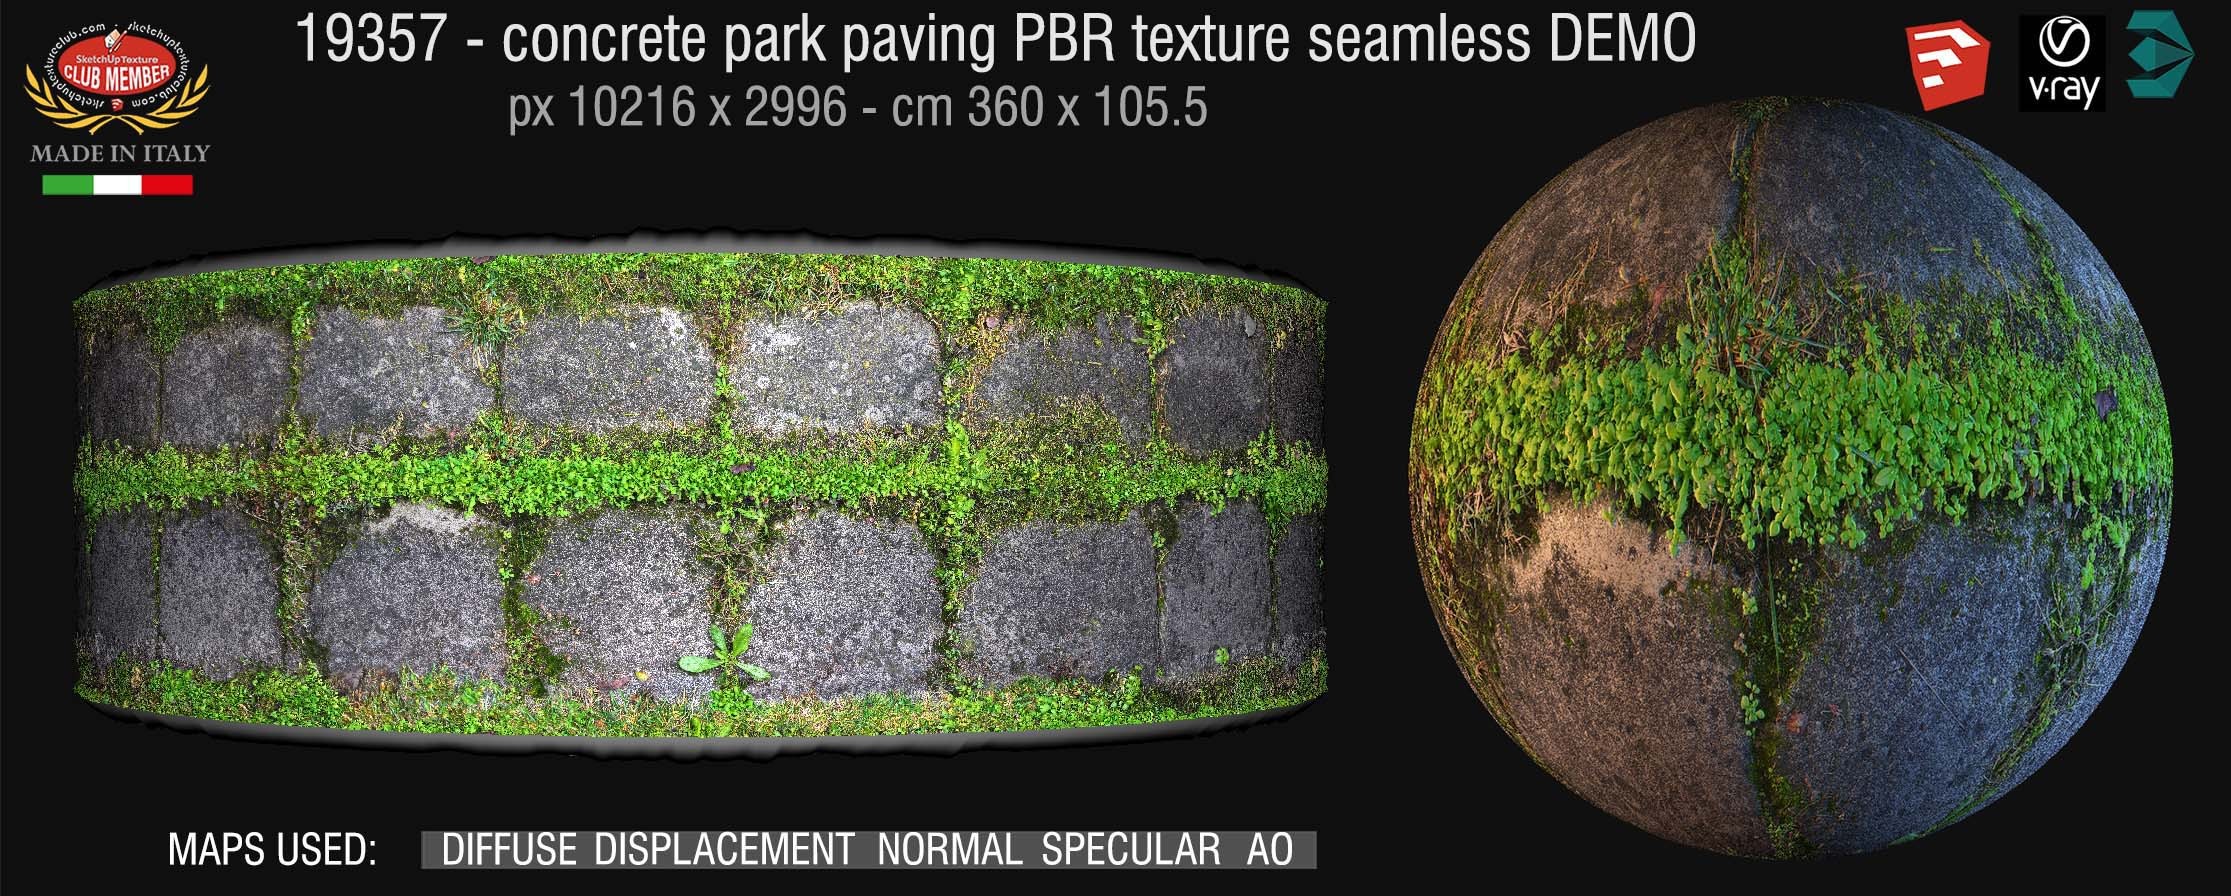 19357 Concrete park paving PBR texture seamless